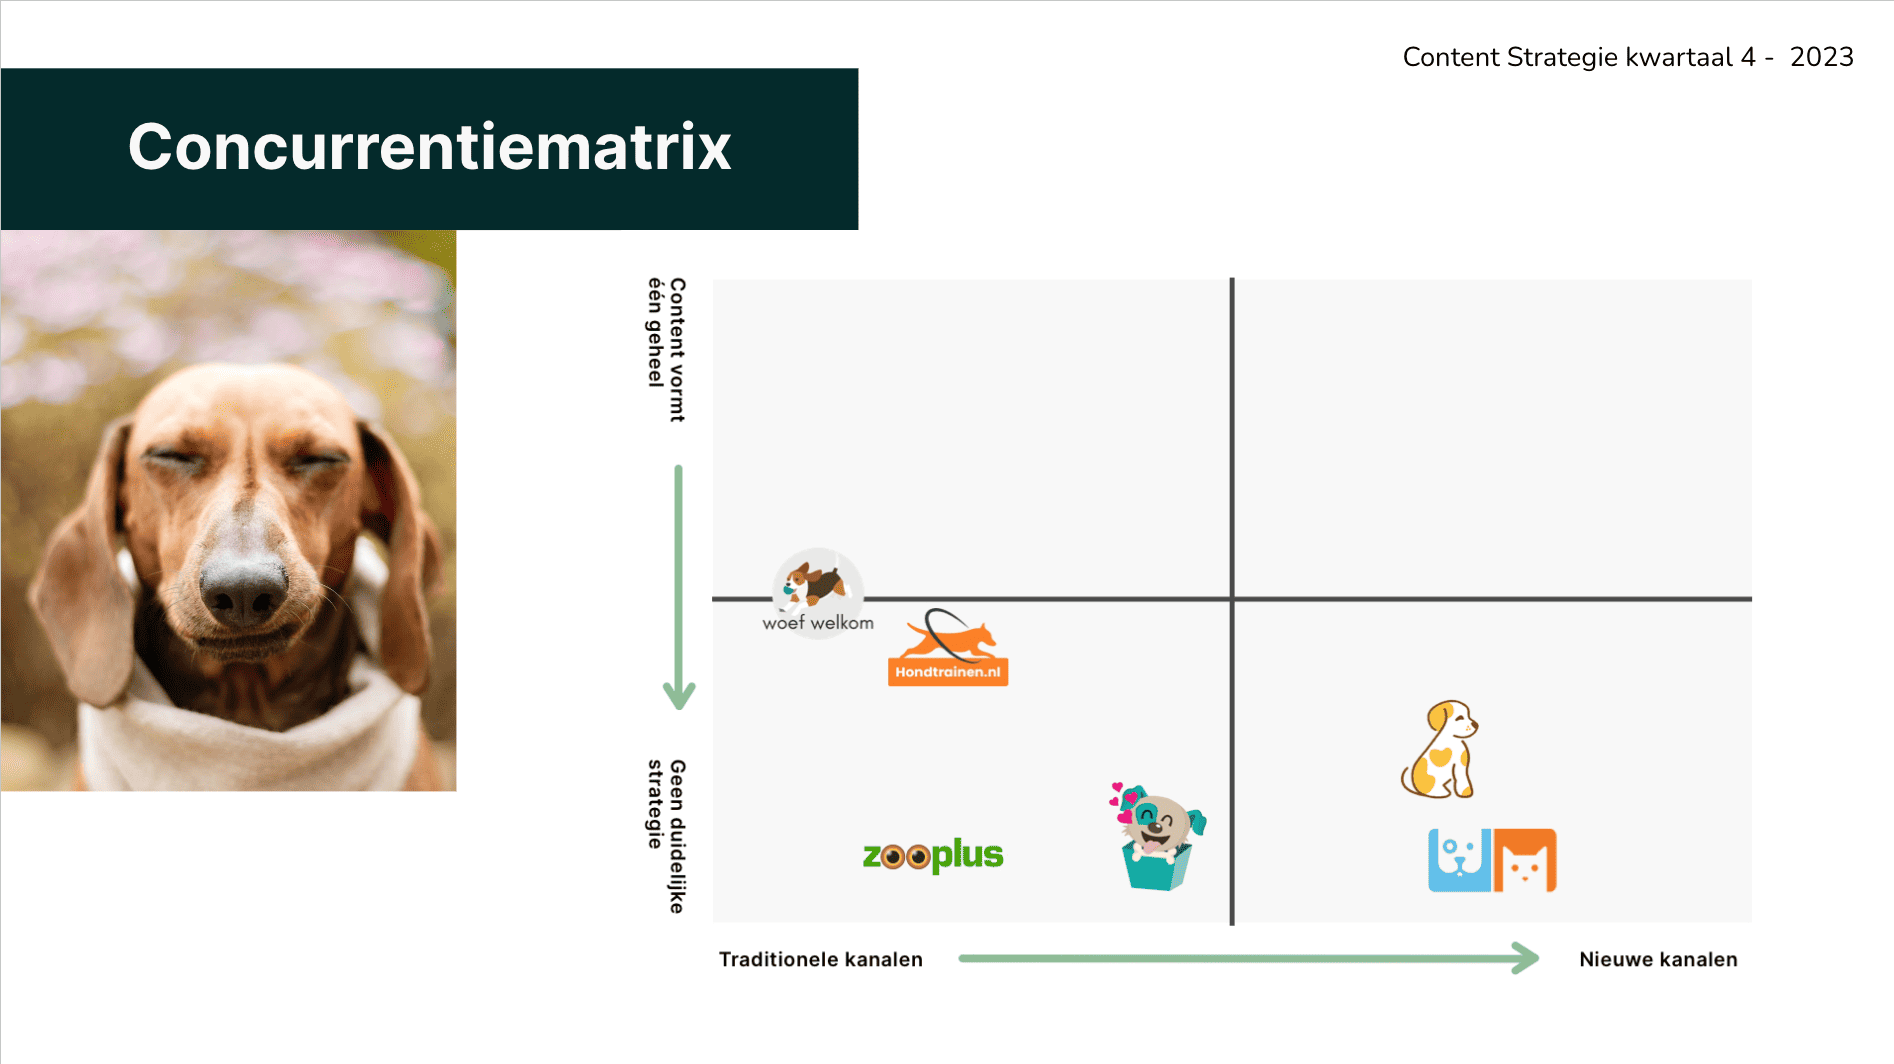 Voorbeeld concurrentiematrix uit ons content strategie voorbeeld